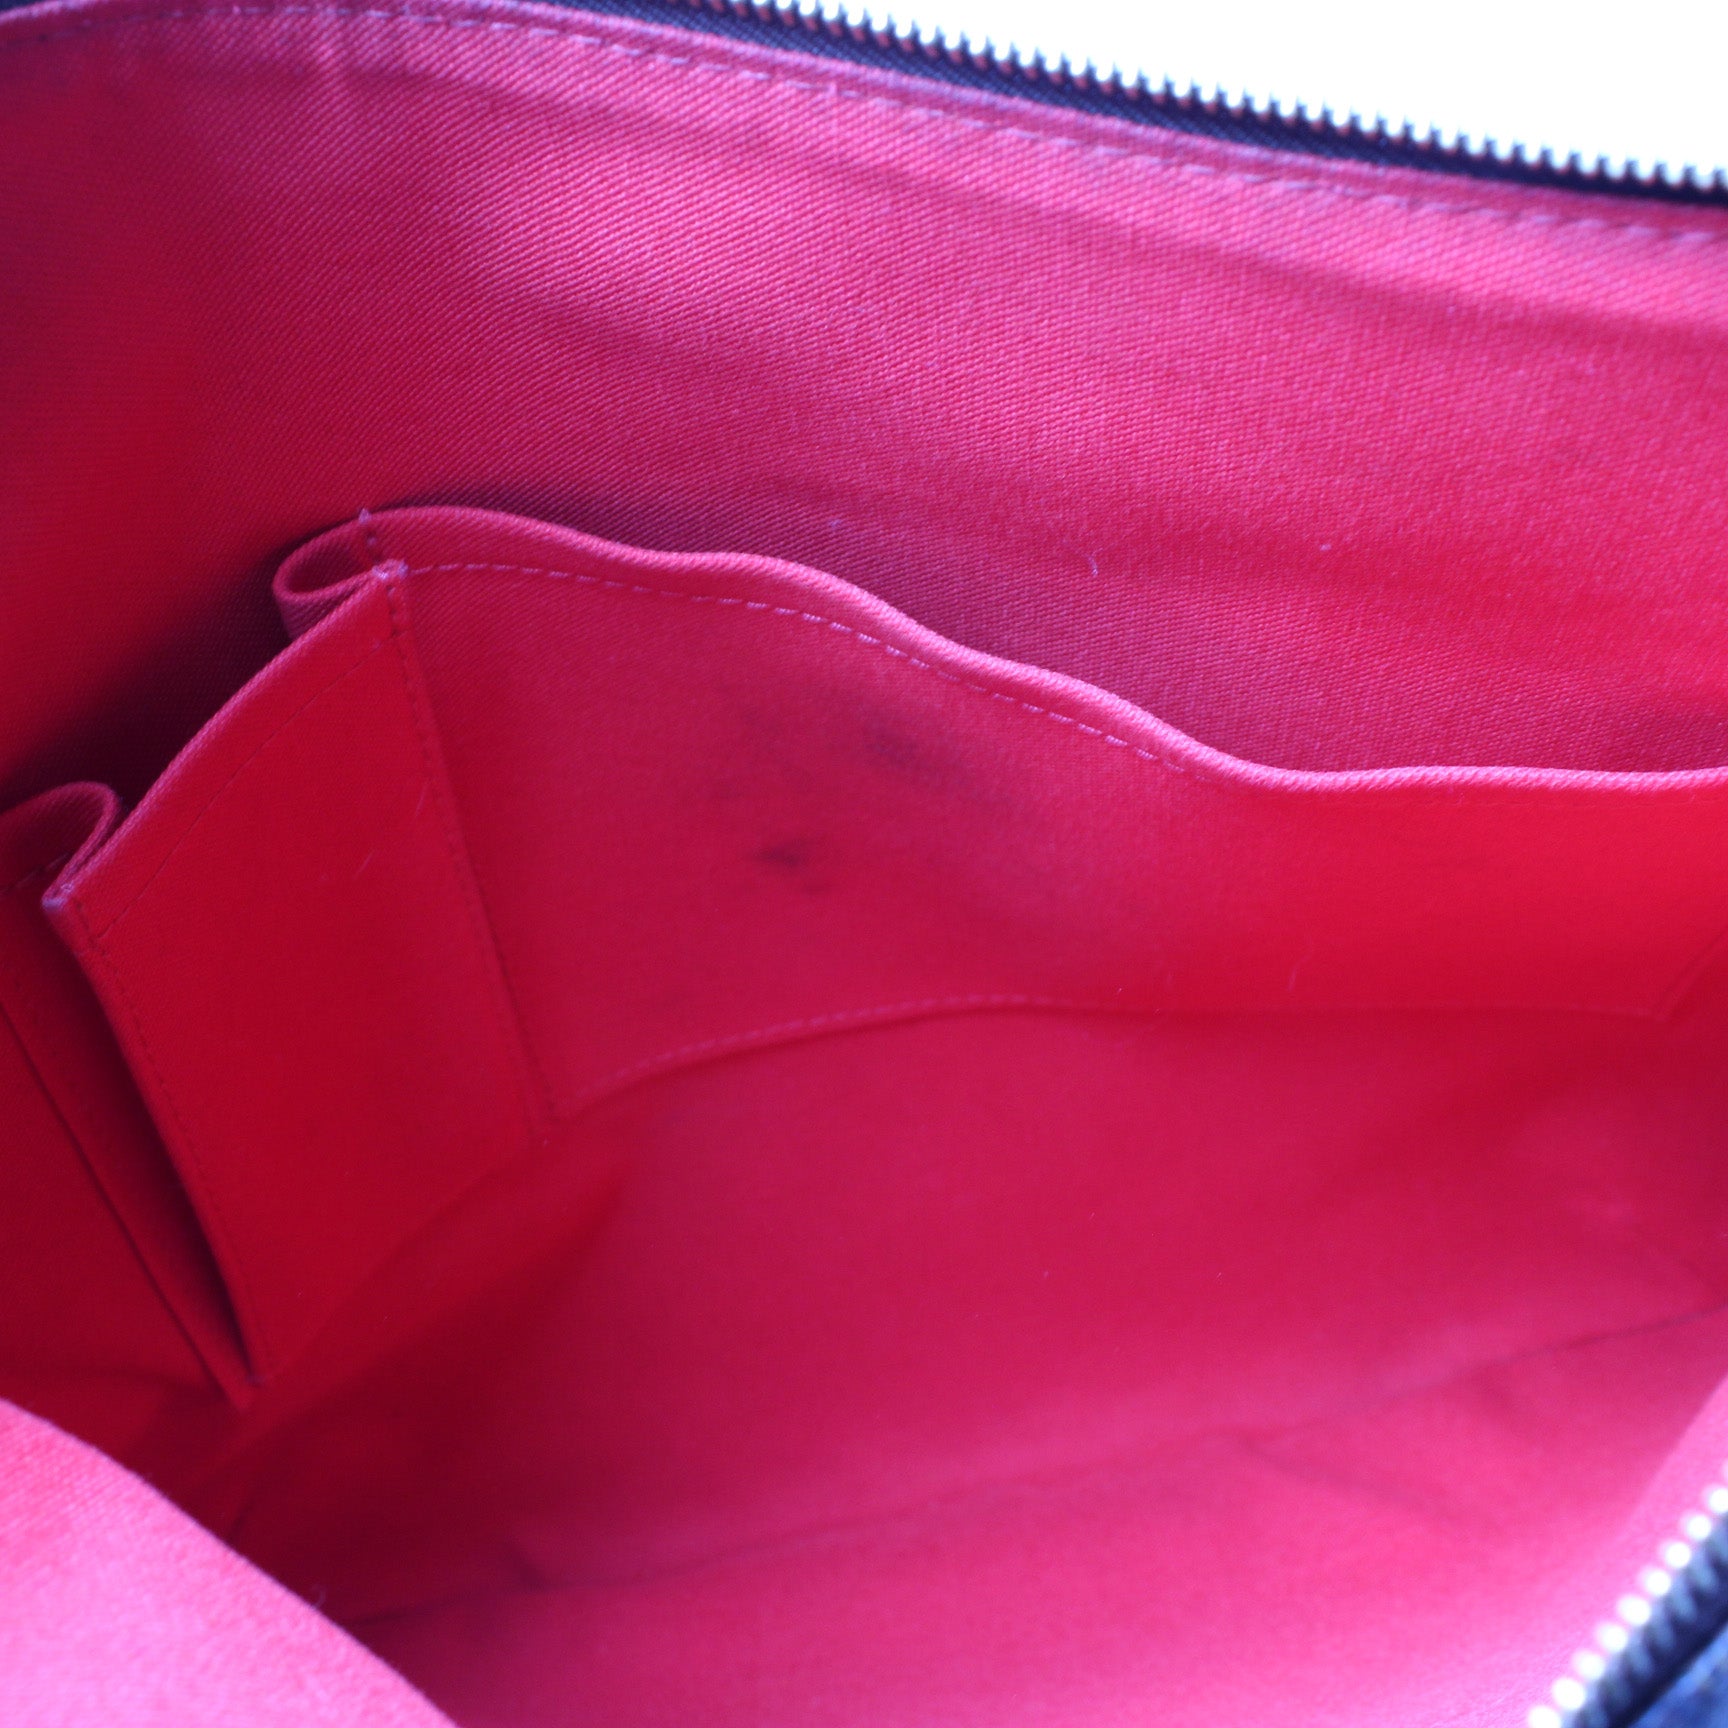 Bloomsbury GM Ebene – Keeks Designer Handbags